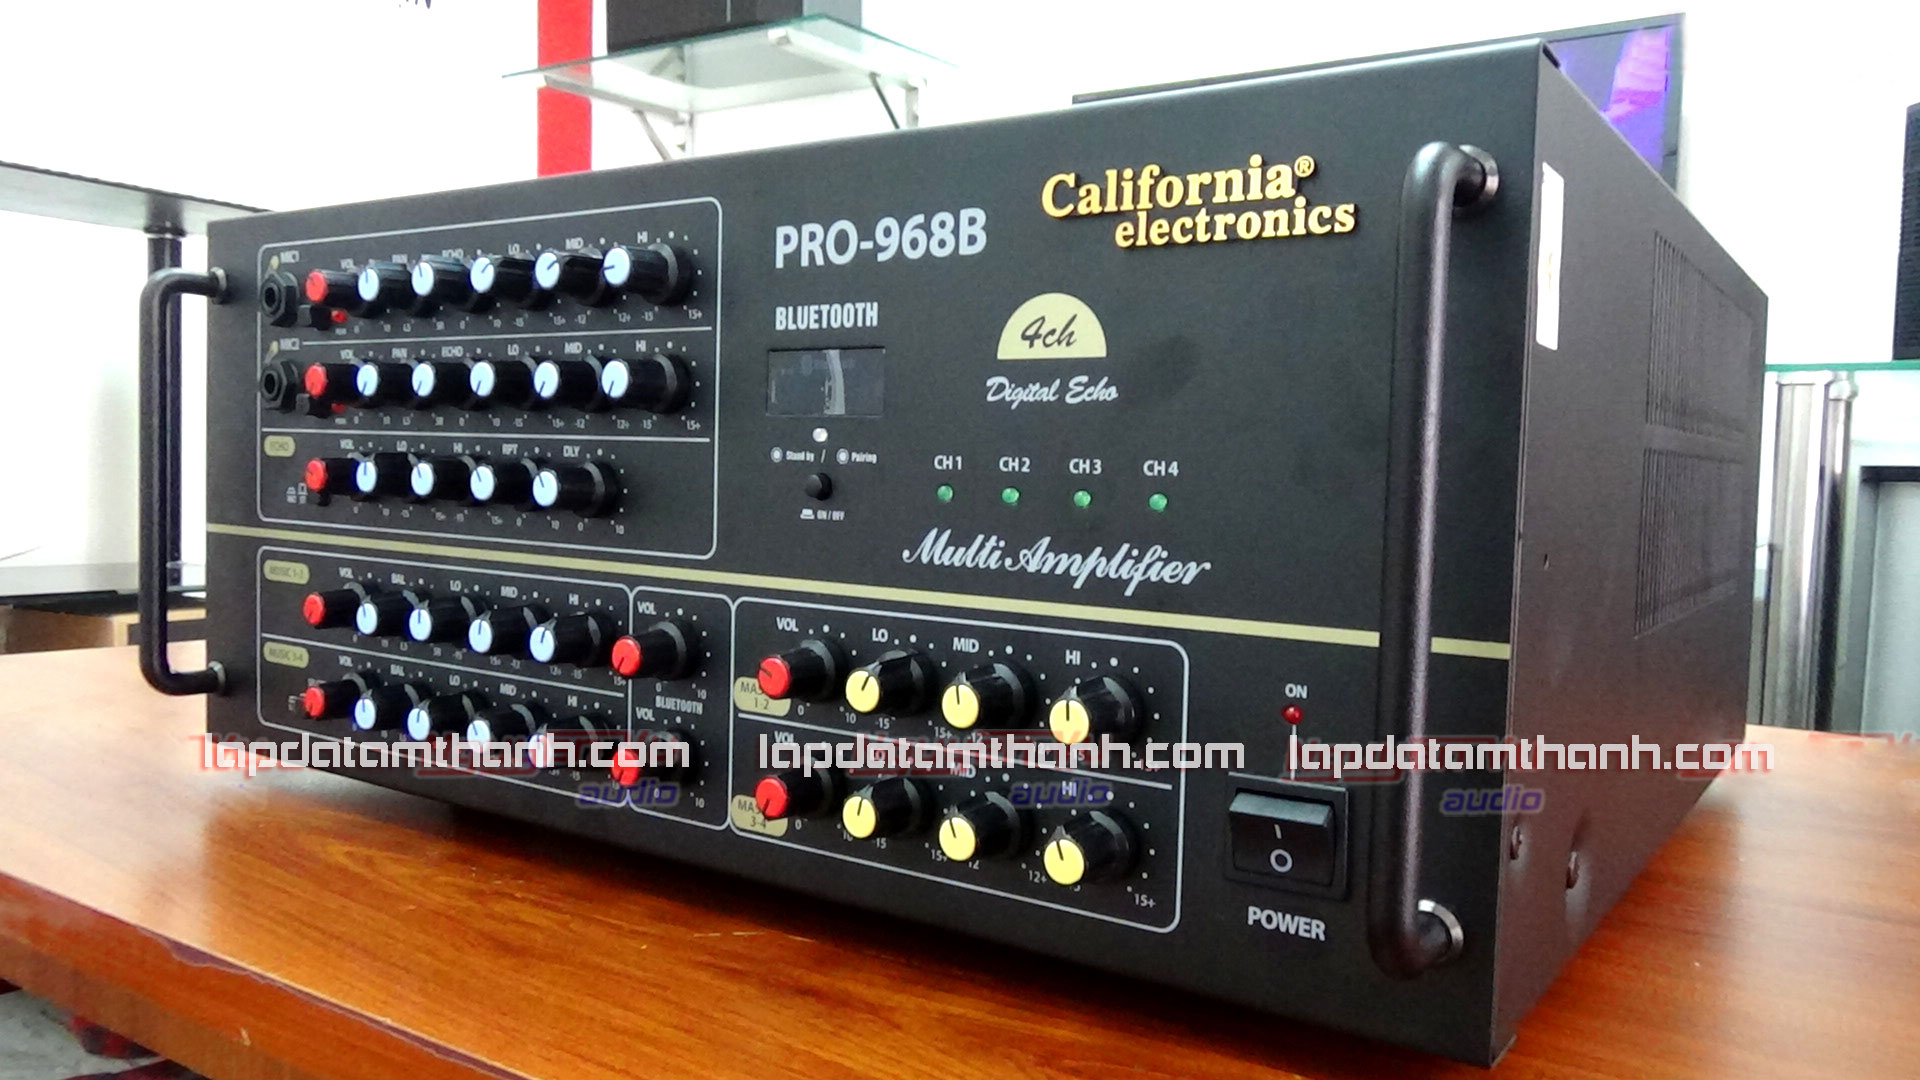 California Pro 968B có giá bán khoảng 10 triệu đồng, được lắp đặt tại nhiều phòng hát kinh doanh